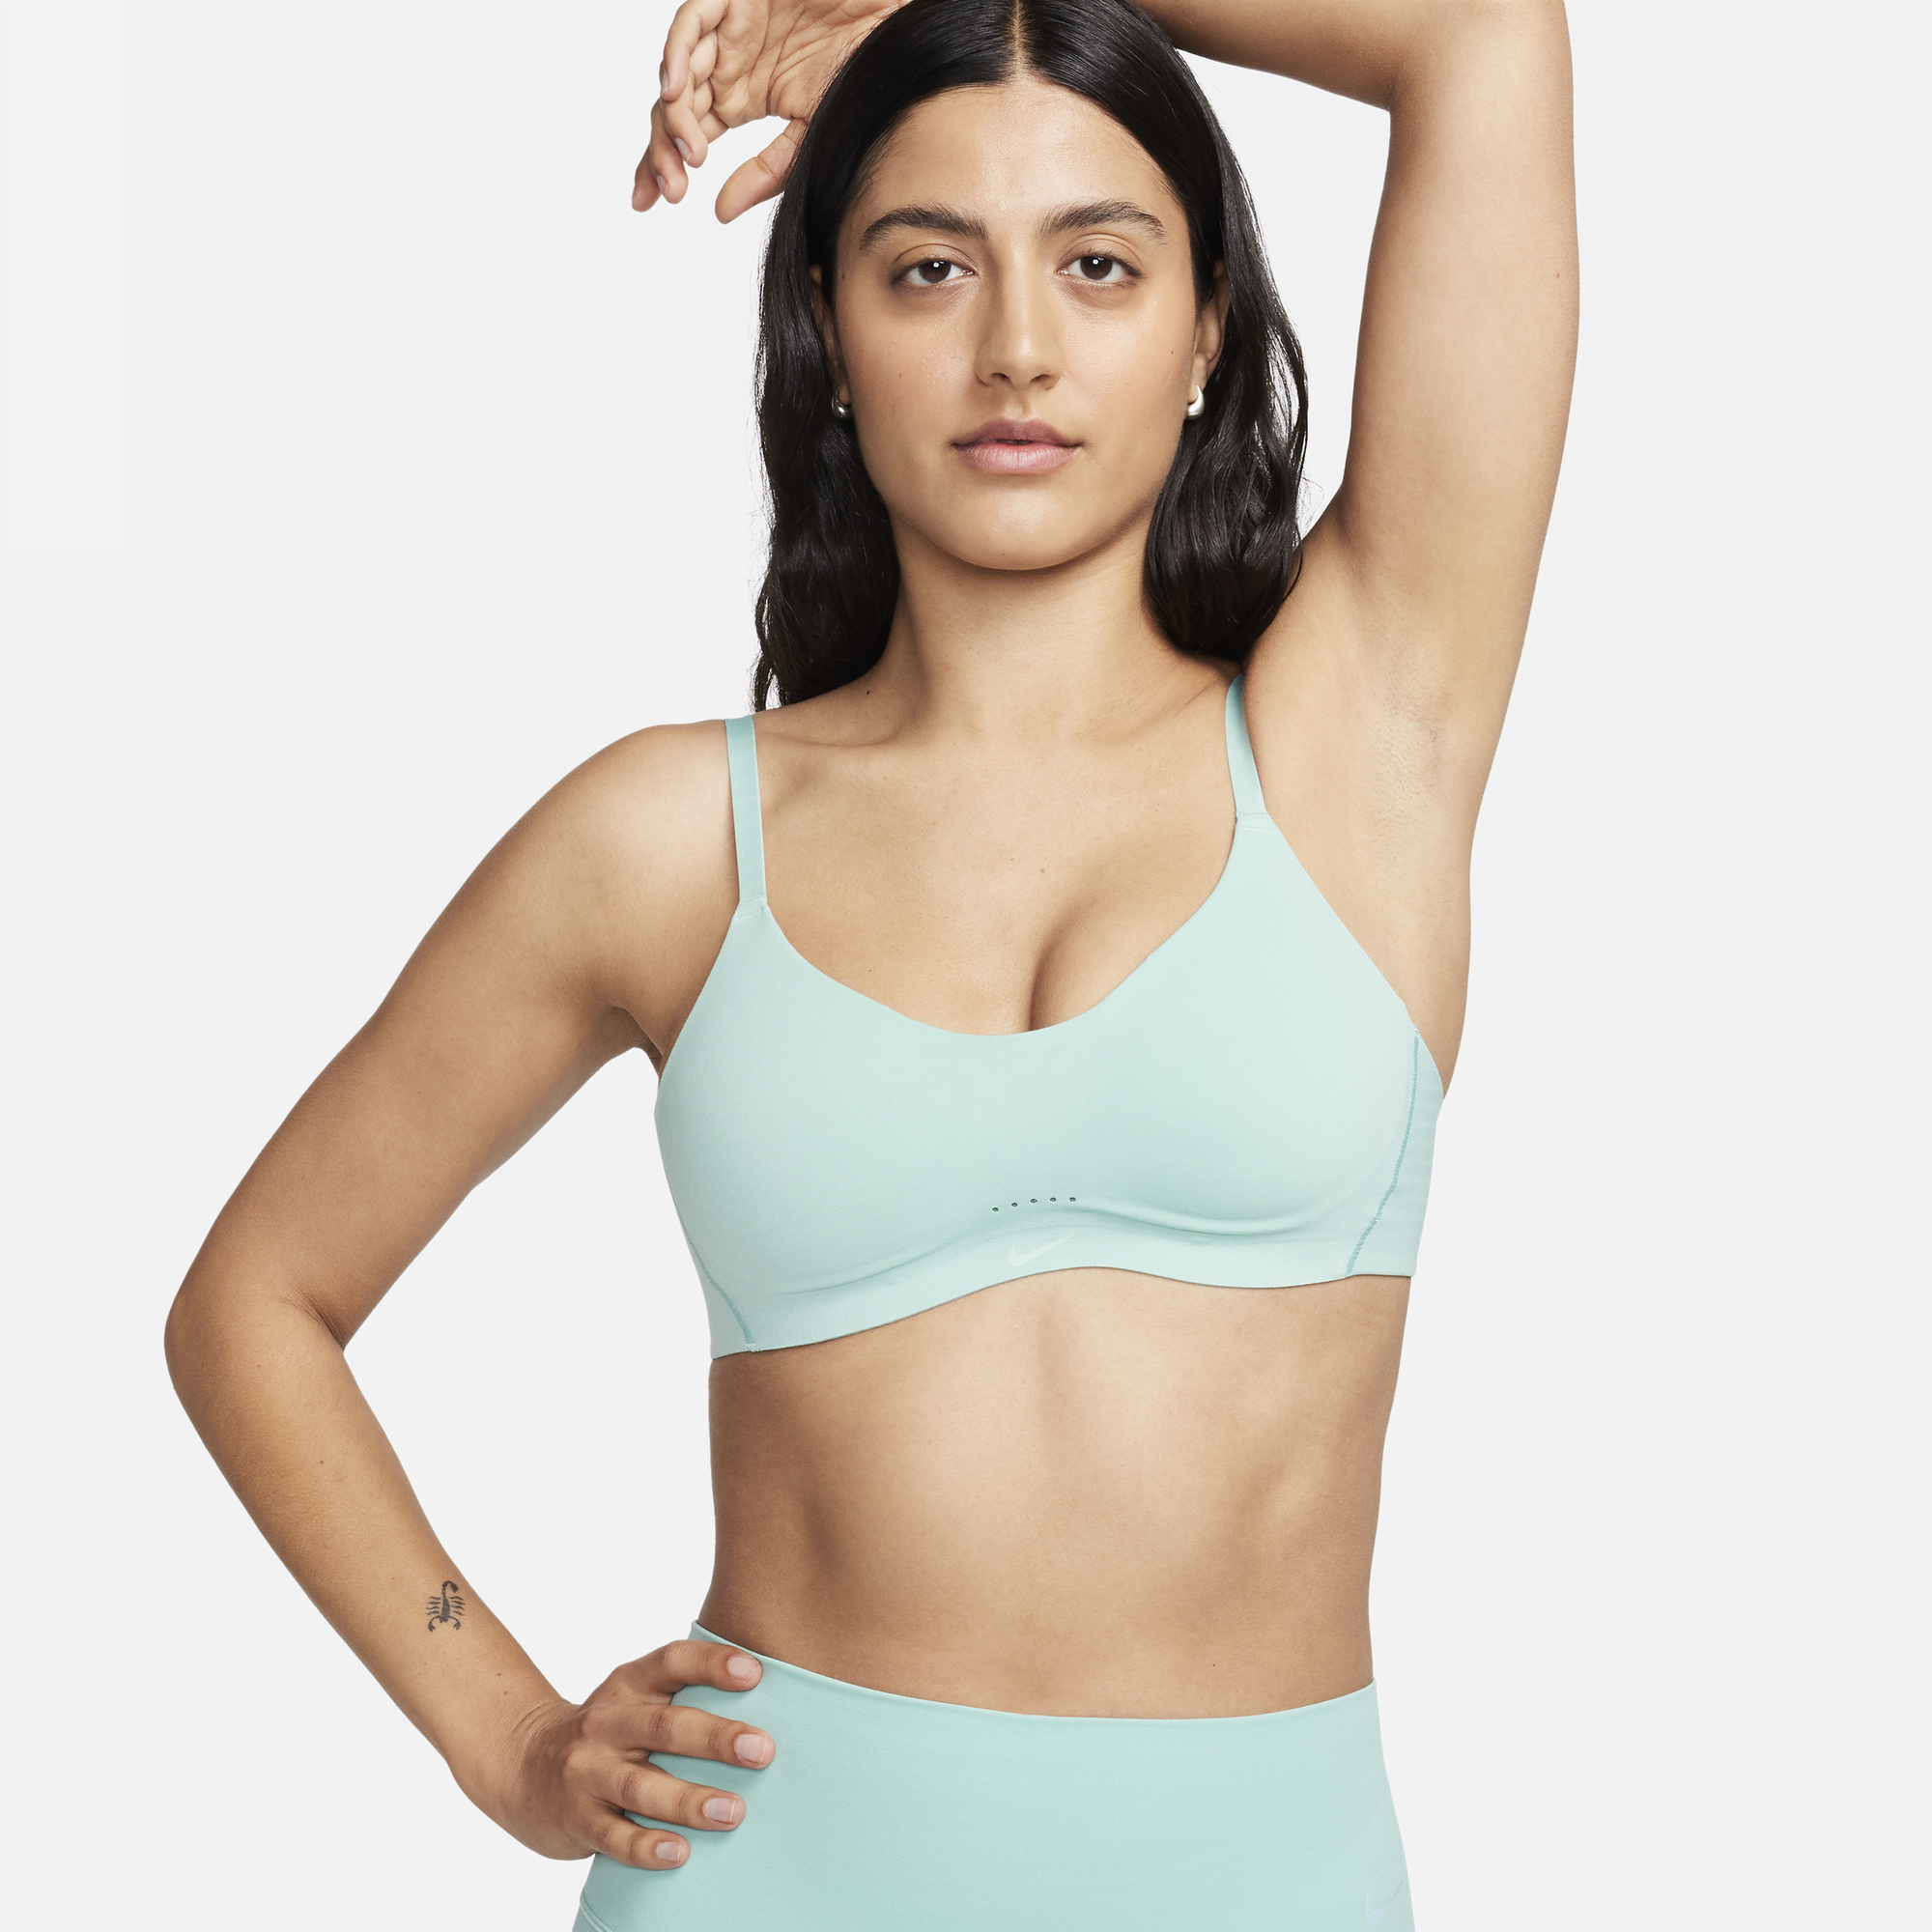 Nike Alate Minimalist Bra Women's Light-Support Padded XXL (F-G) Light Pink  NWT